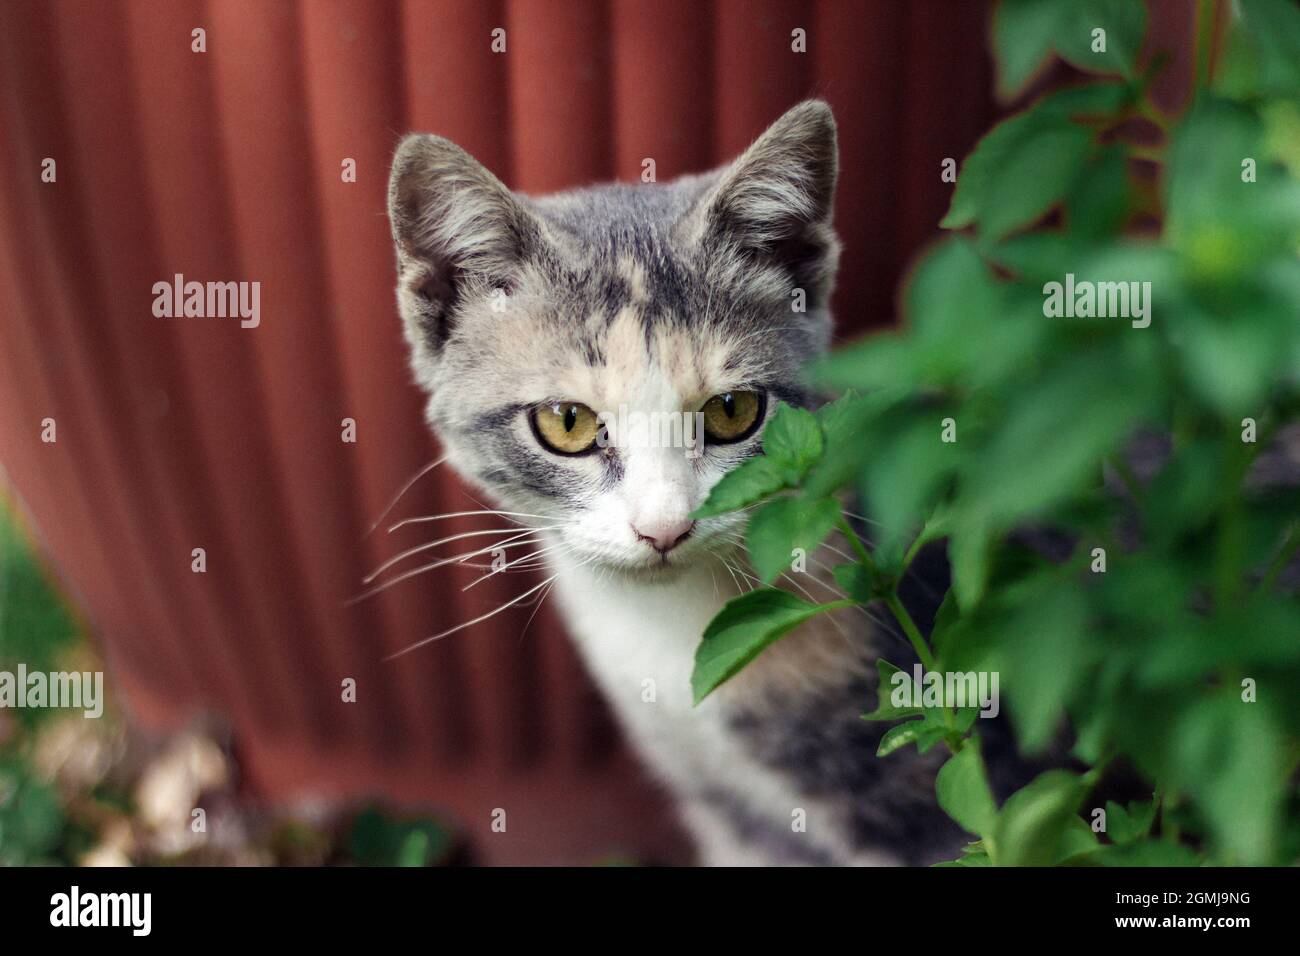 Piccolo gattino calico nascosto nel giardino Foto Stock